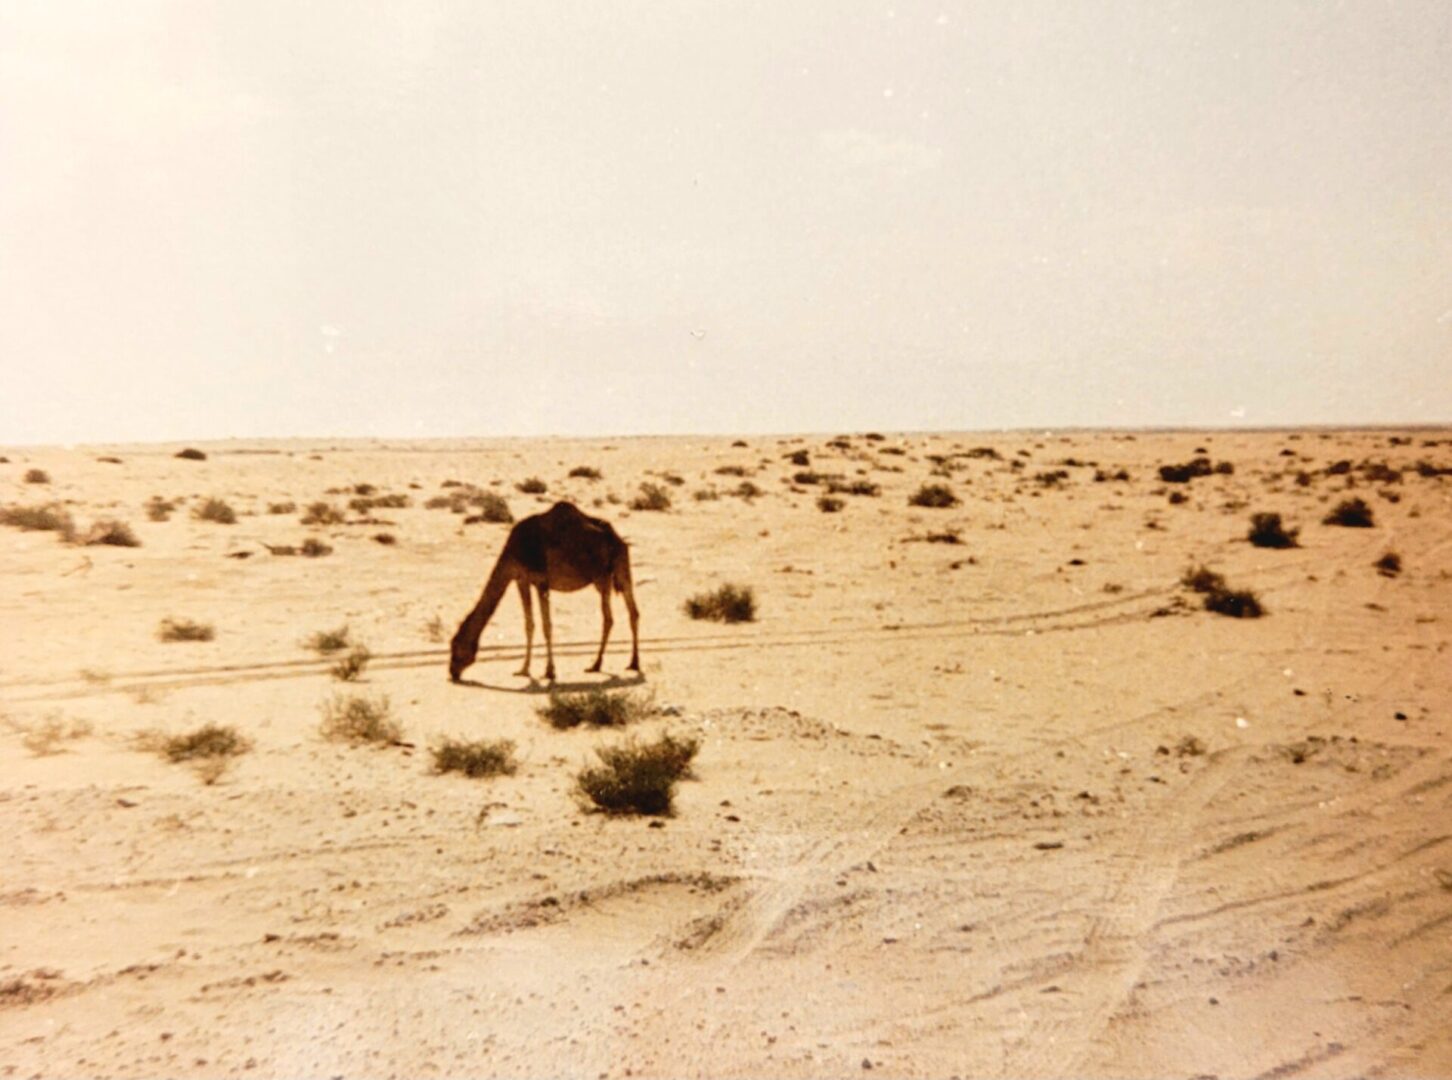 Camel in the Saudi desert 2